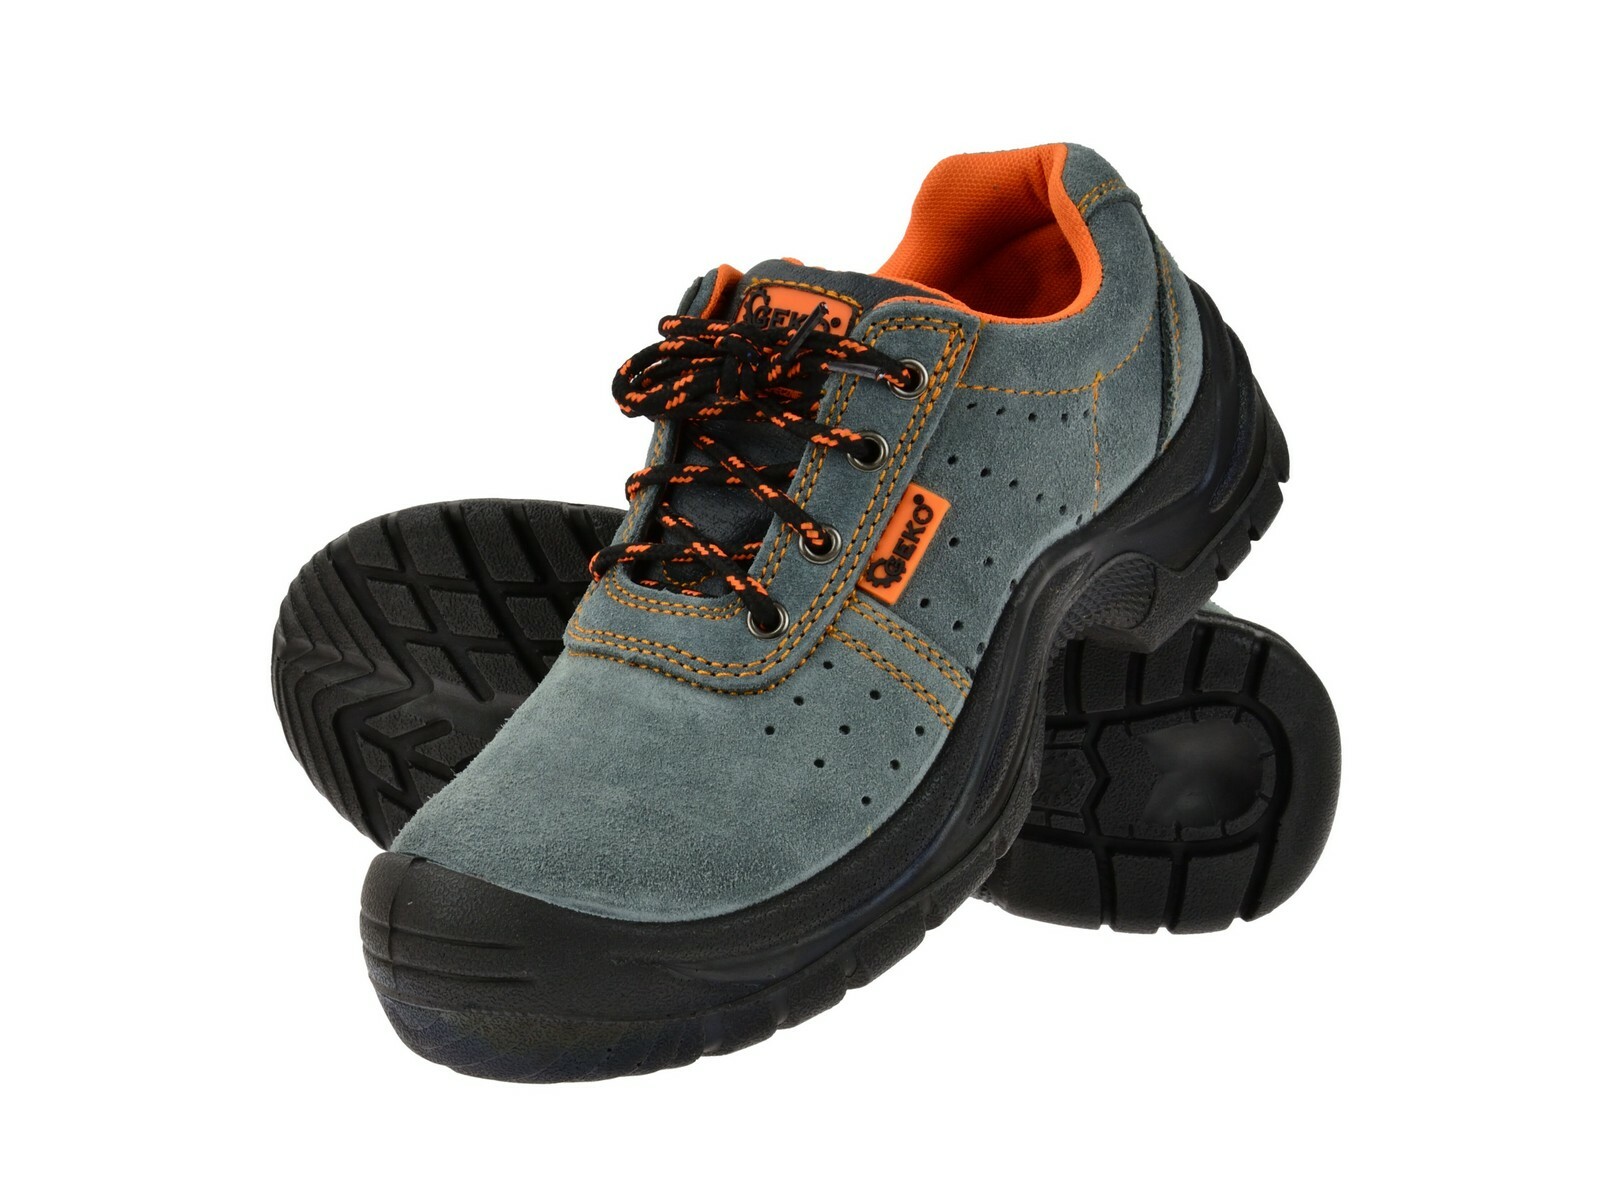 Ochranné pracovní boty semišové model č.3 vel.40 GEKO nářadí G90520 + Dárek, servis bez starostí v hodnotě 300Kč